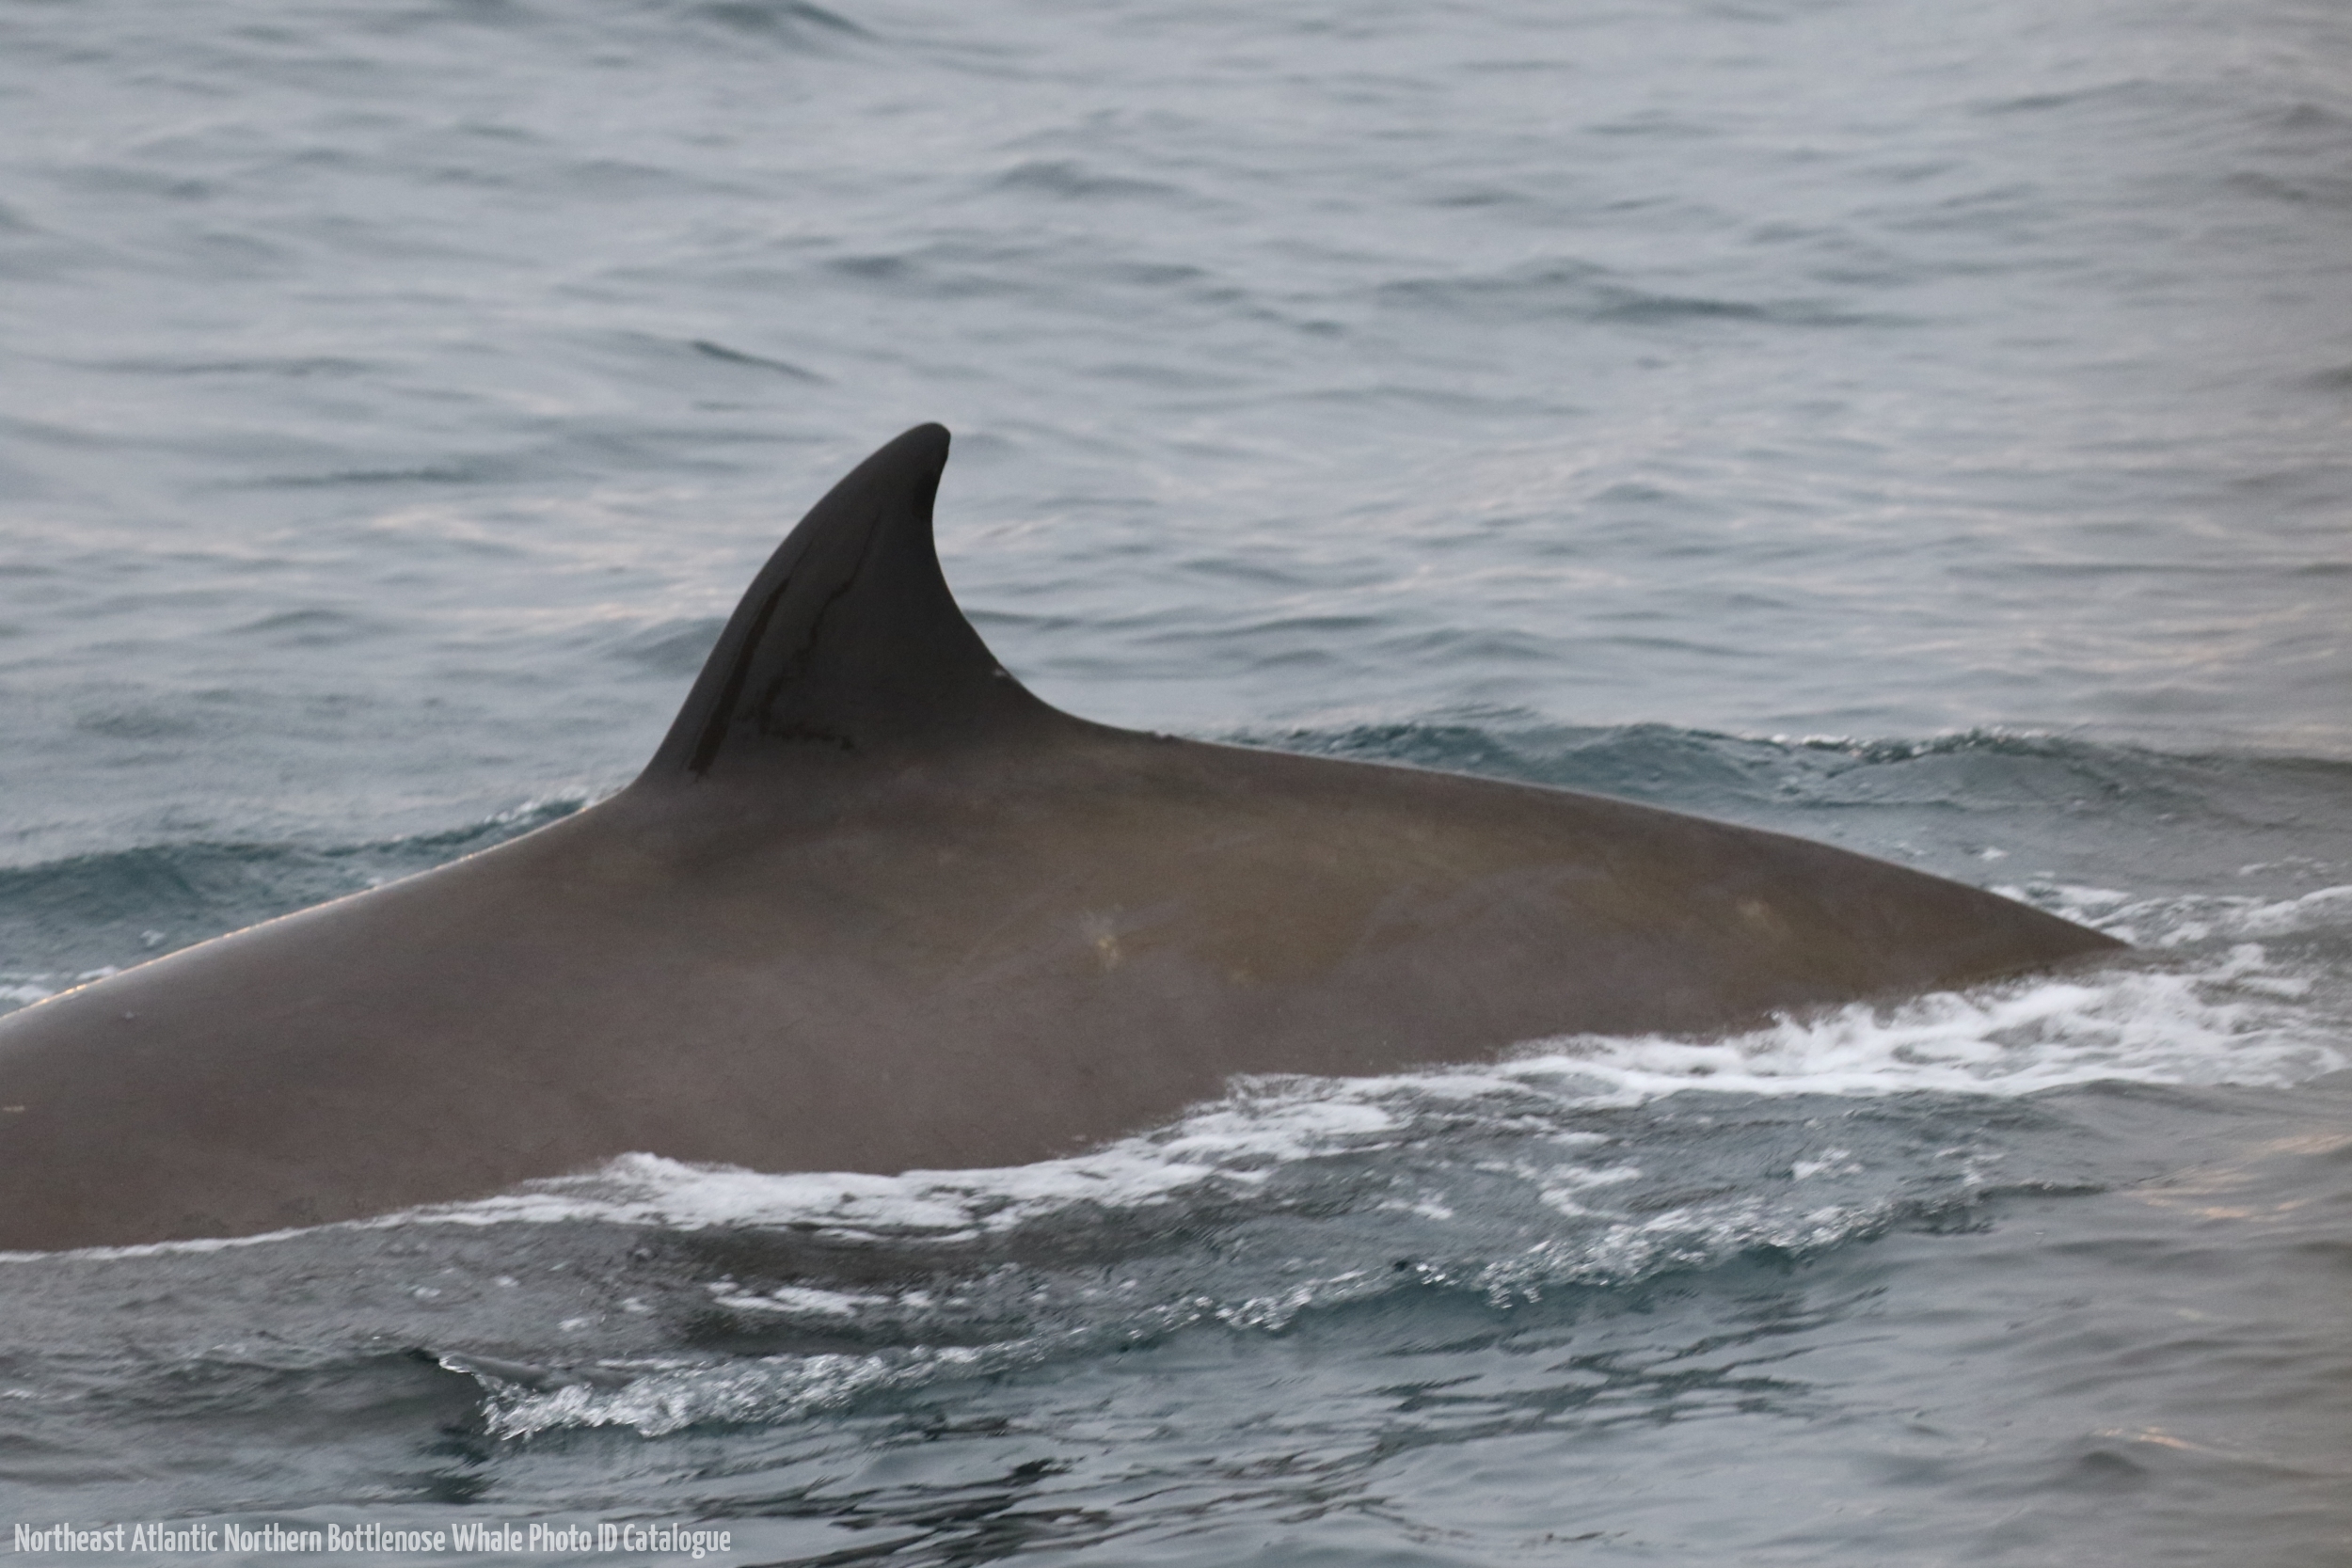 Whale ID: 0184,  Date taken: 18-06-2016,  Photographer: Eilidh Siegal